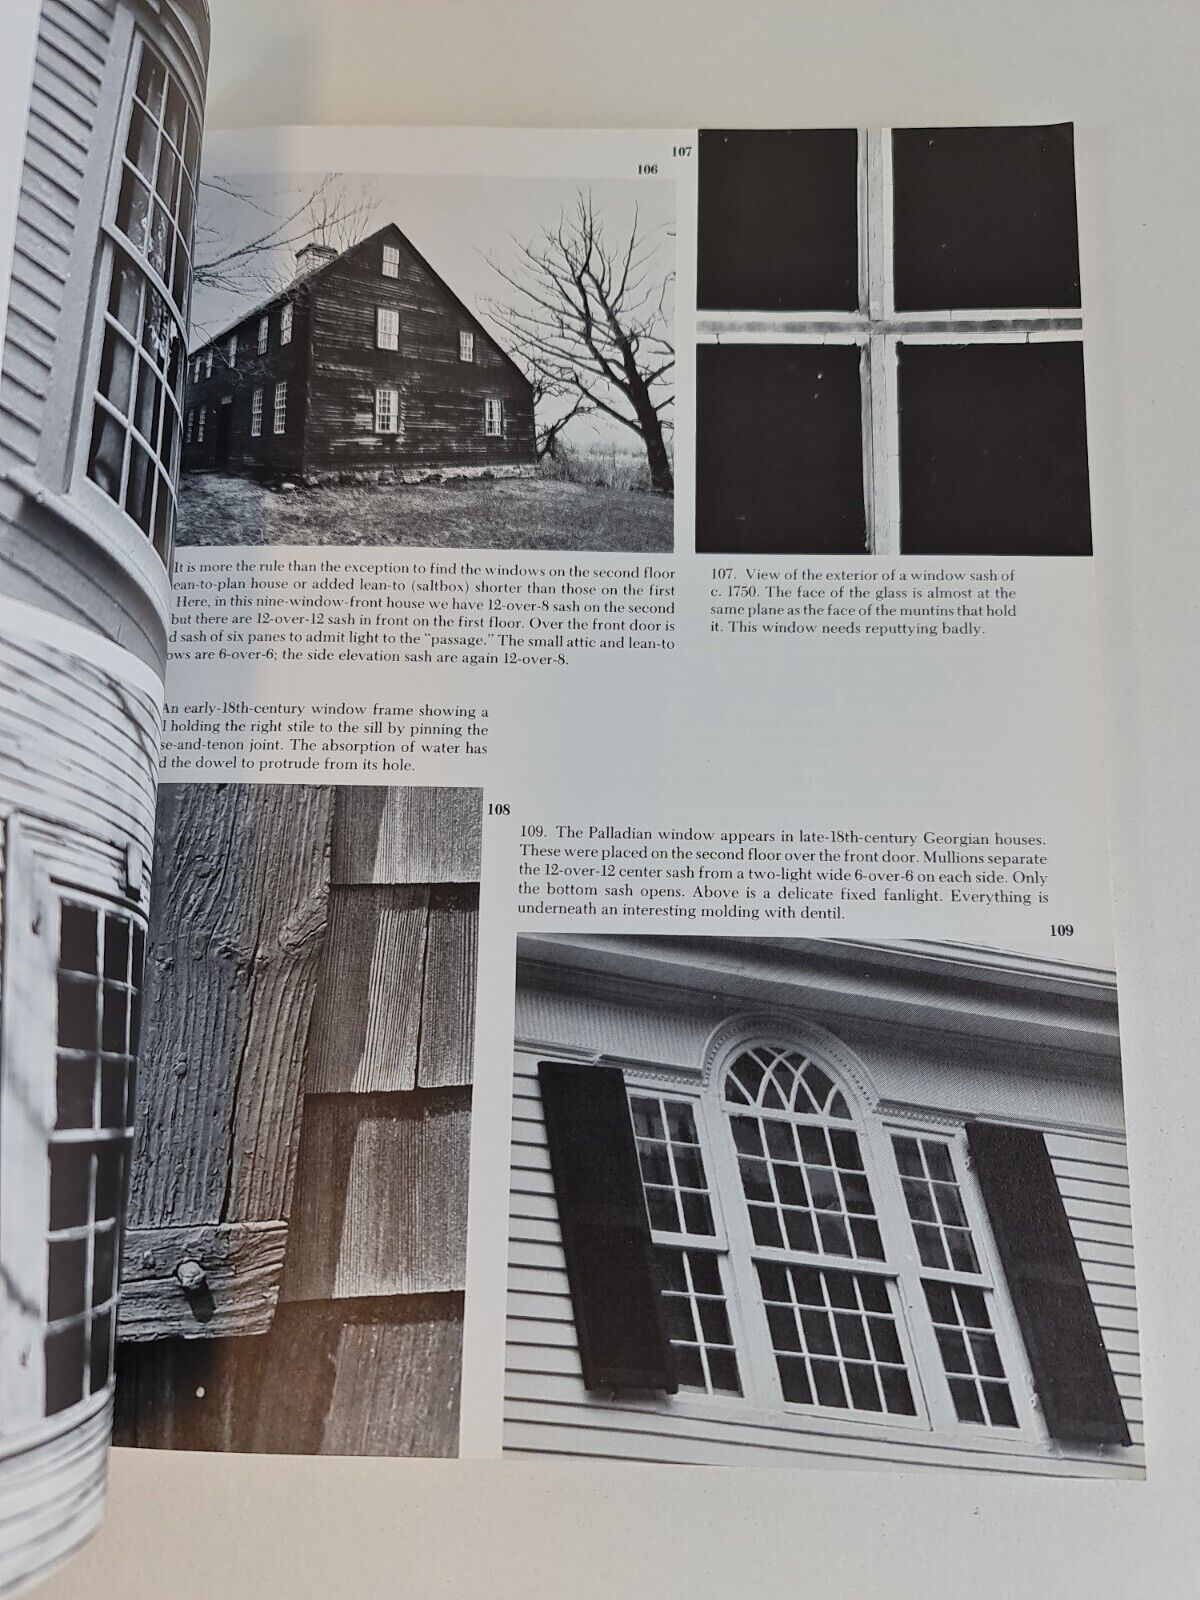 Antique Houses: Their Construction & Restoration by E Friedland (1990)